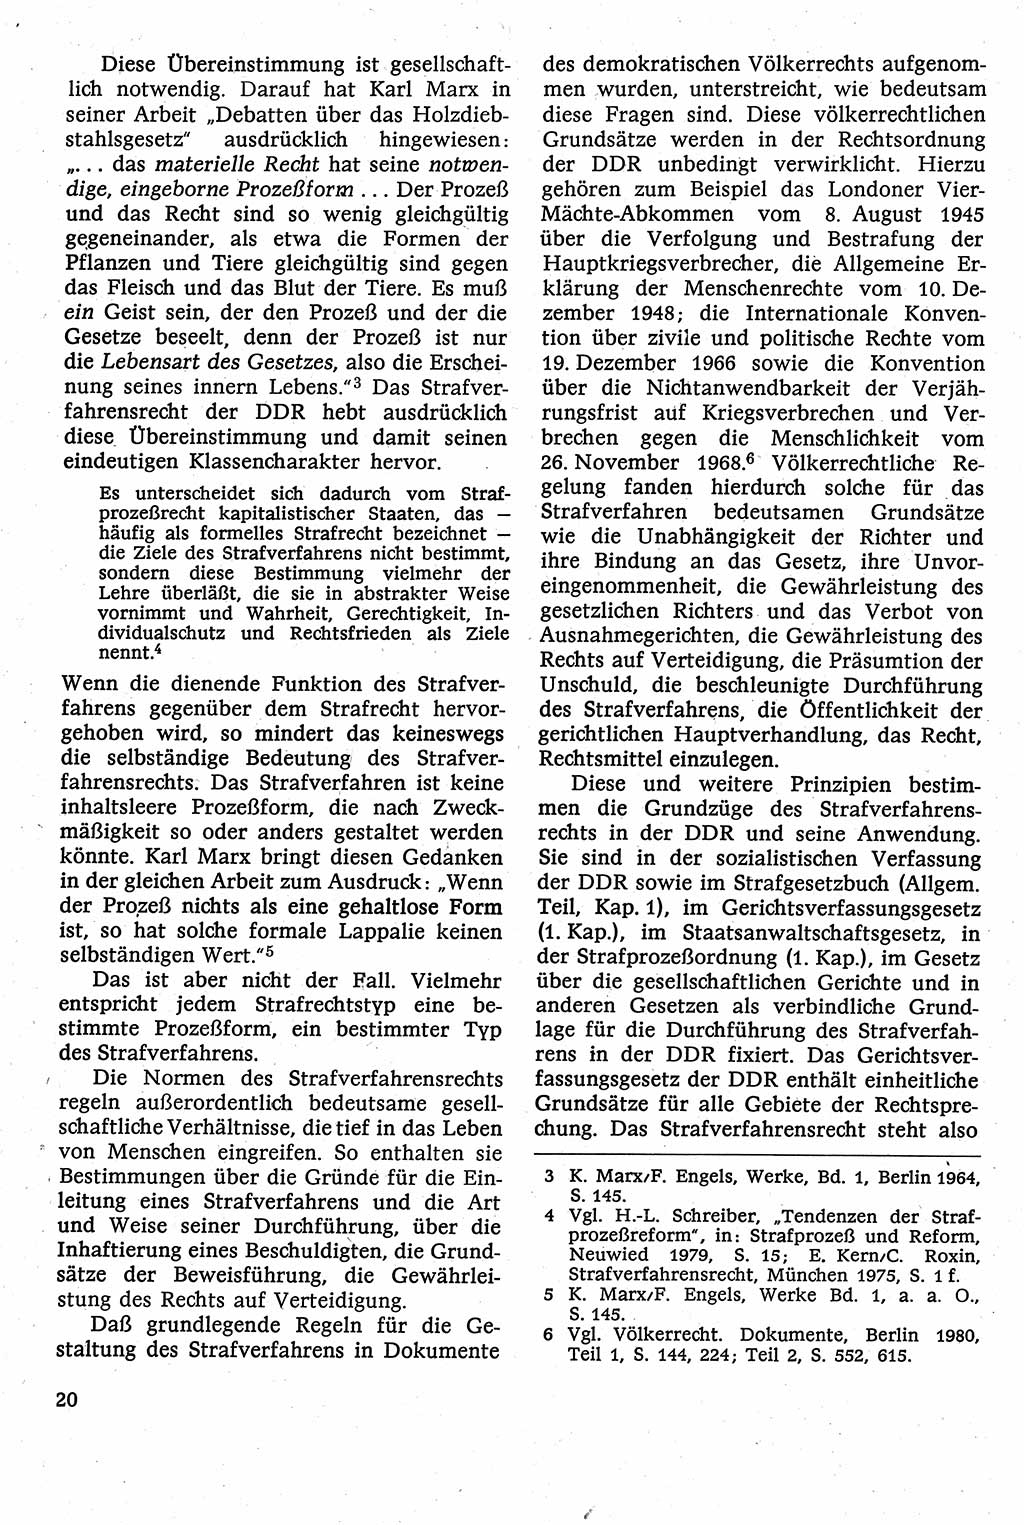 Strafverfahrensrecht [Deutsche Demokratische Republik (DDR)], Lehrbuch 1982, Seite 20 (Strafverf.-R. DDR Lb. 1982, S. 20)